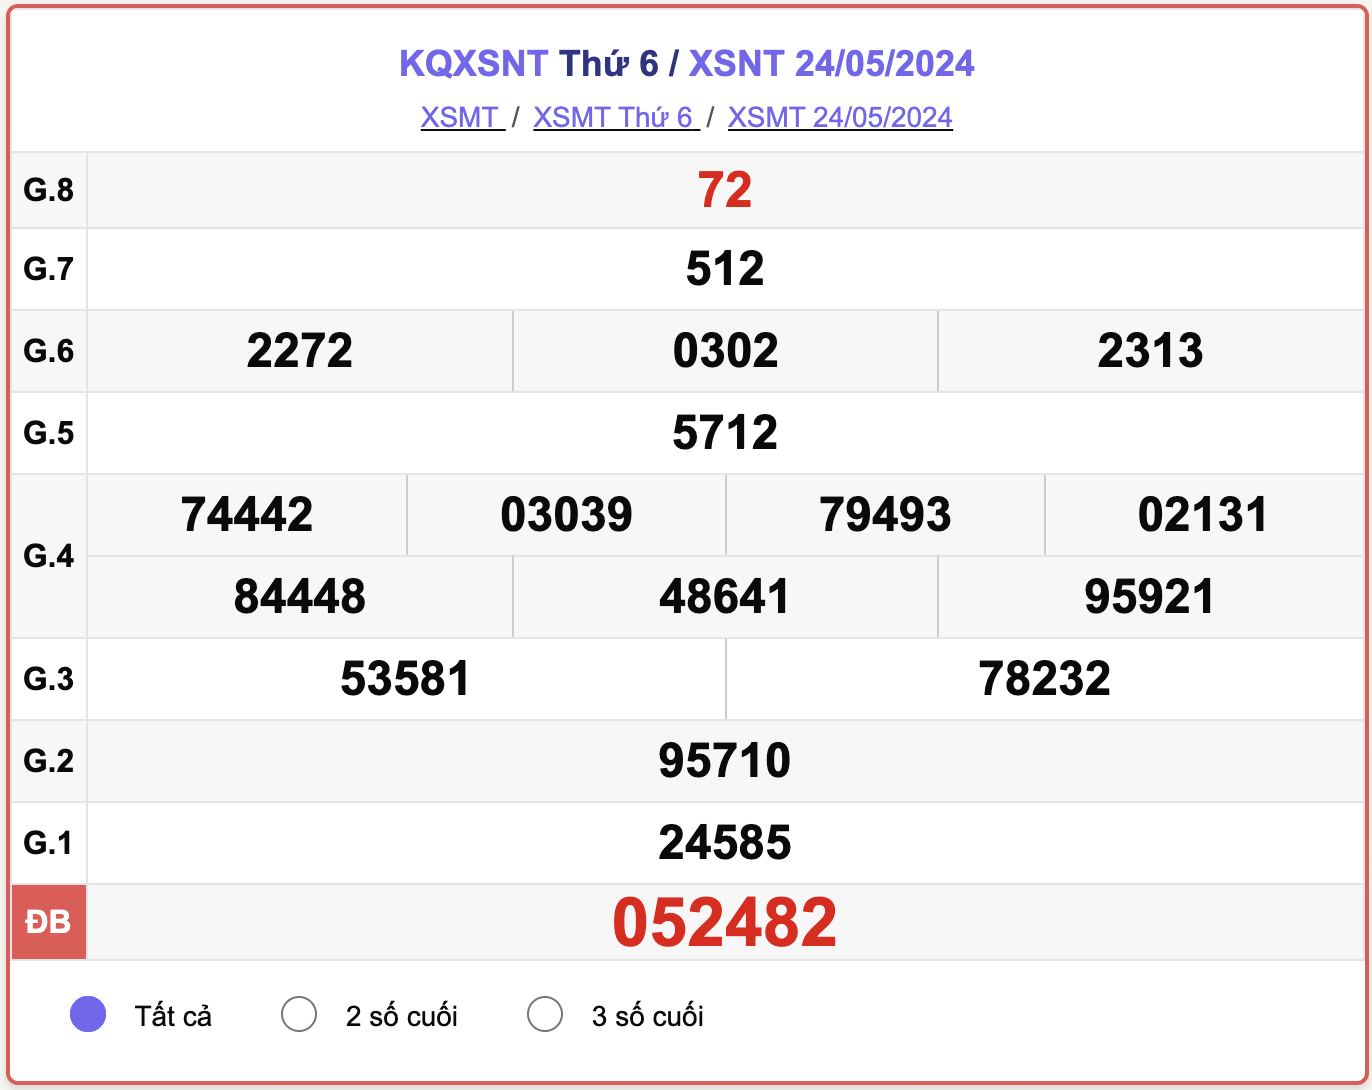 XSNT 24/5, kết quả xổ số Ninh Thuận hôm nay 24/5/2024.